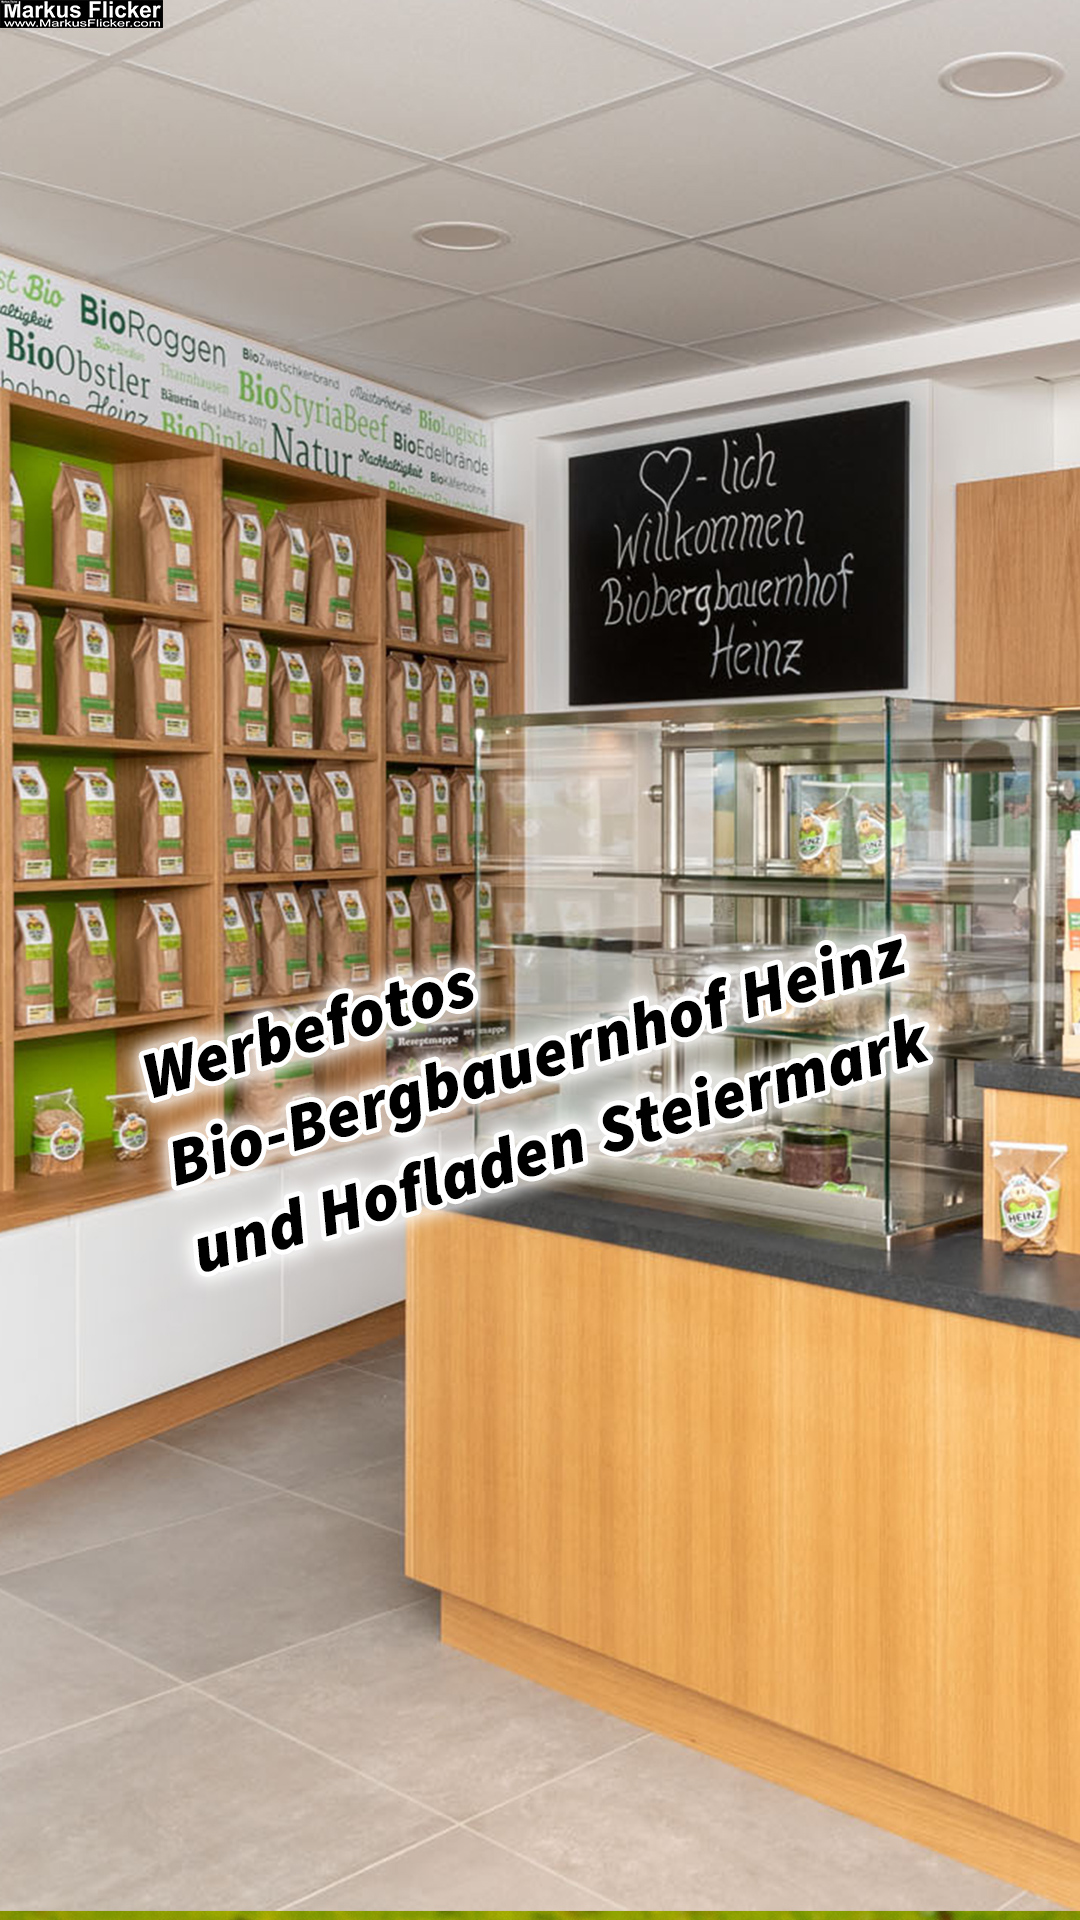 Werbefotos Bio-Bergbauernhof Heinz und Hofladen Steiermark